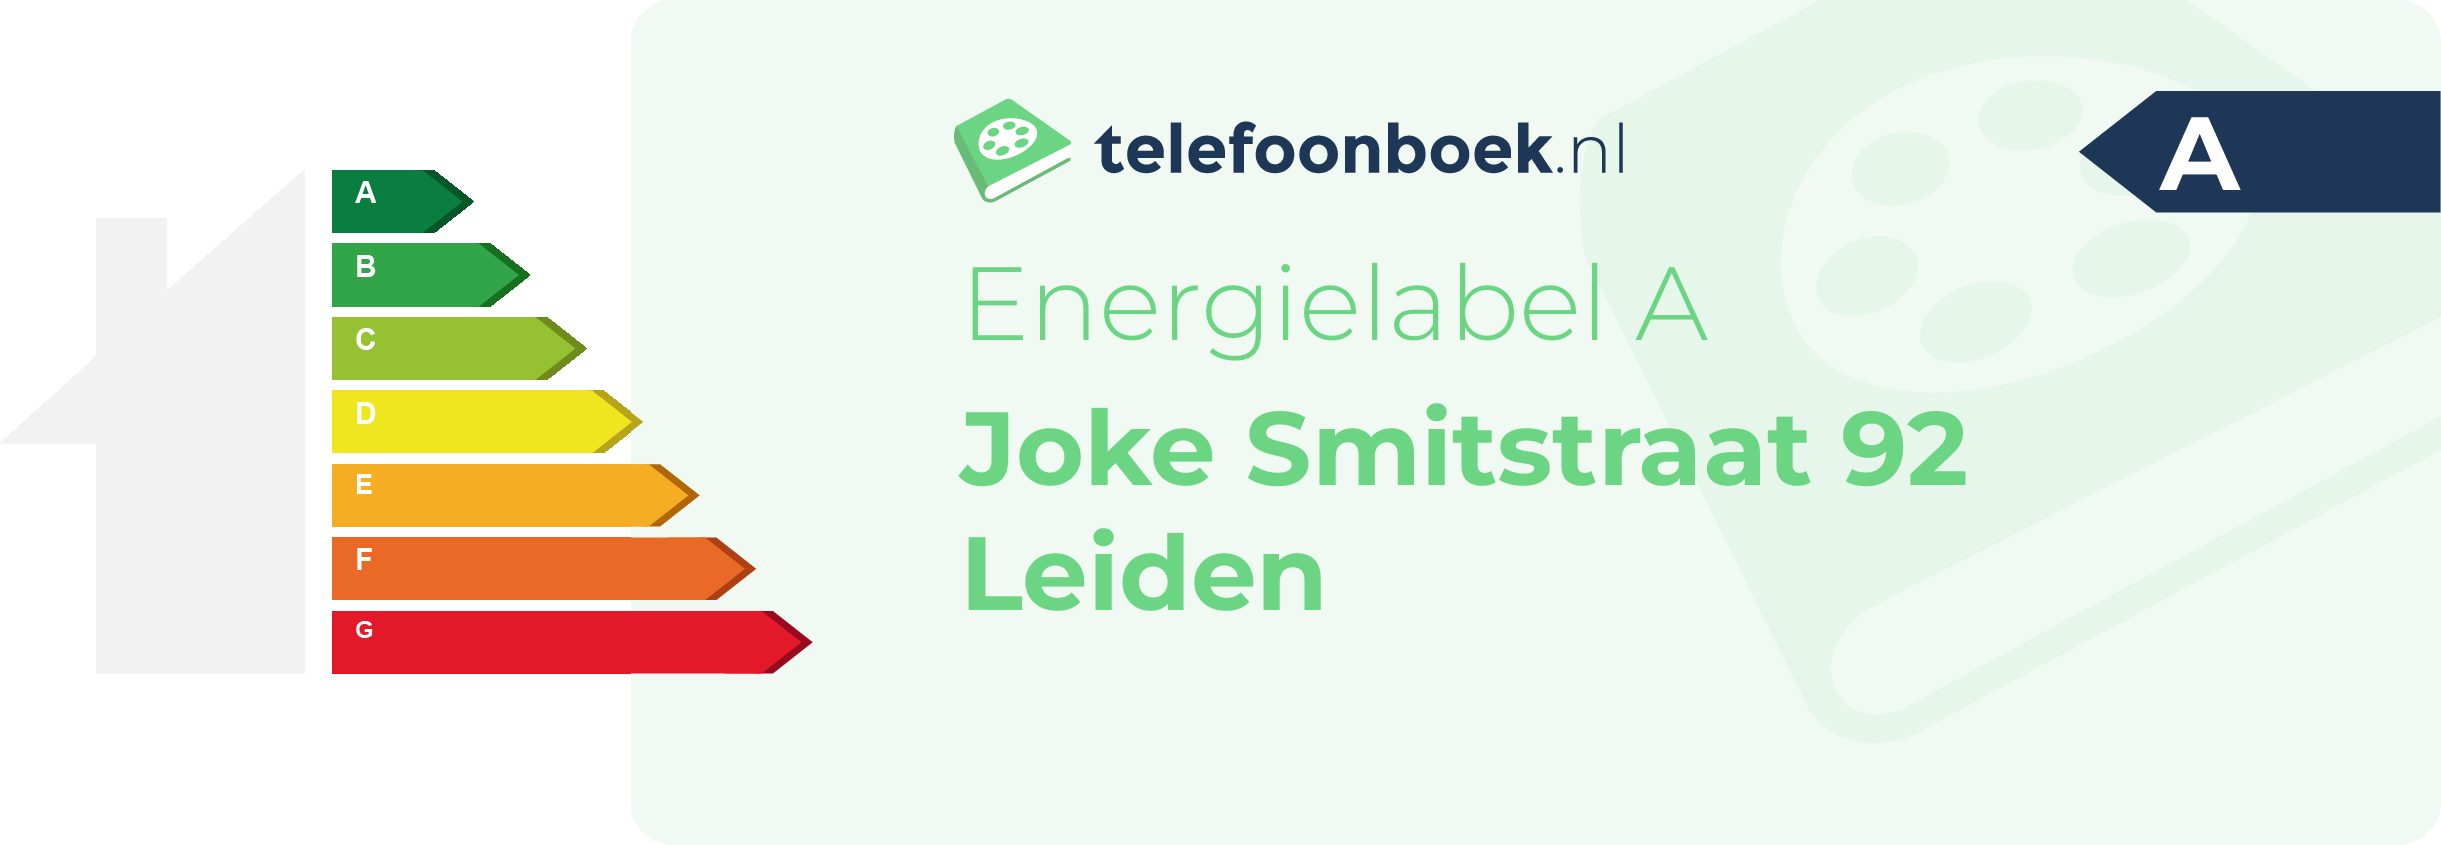 Energielabel Joke Smitstraat 92 Leiden